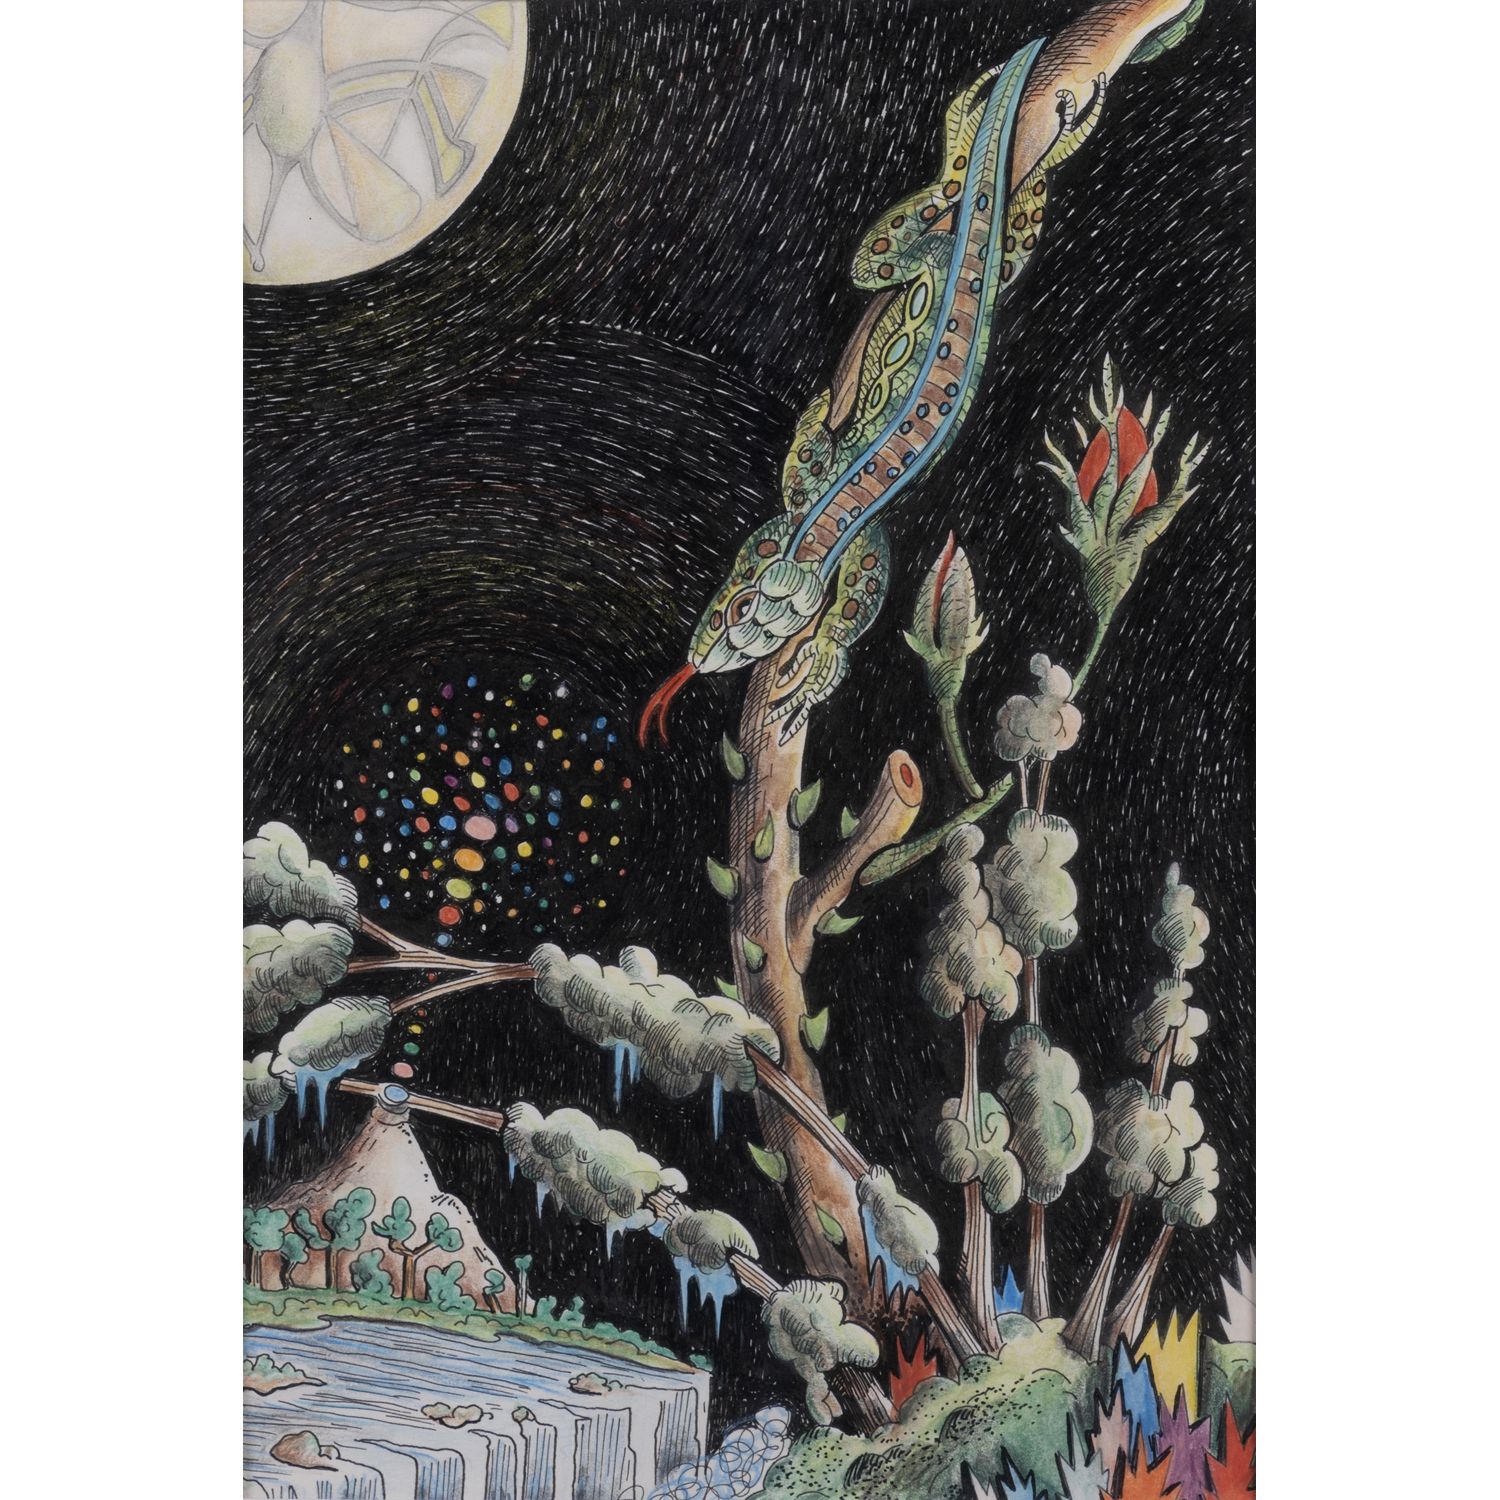 Null 胡戈-雷普（生于1964年

黑画，系列二，2012

纸上彩色墨水和铅笔

20 x 13.5厘米

出处： - 现任主人直接从艺术家那里获得的。
&hellip;